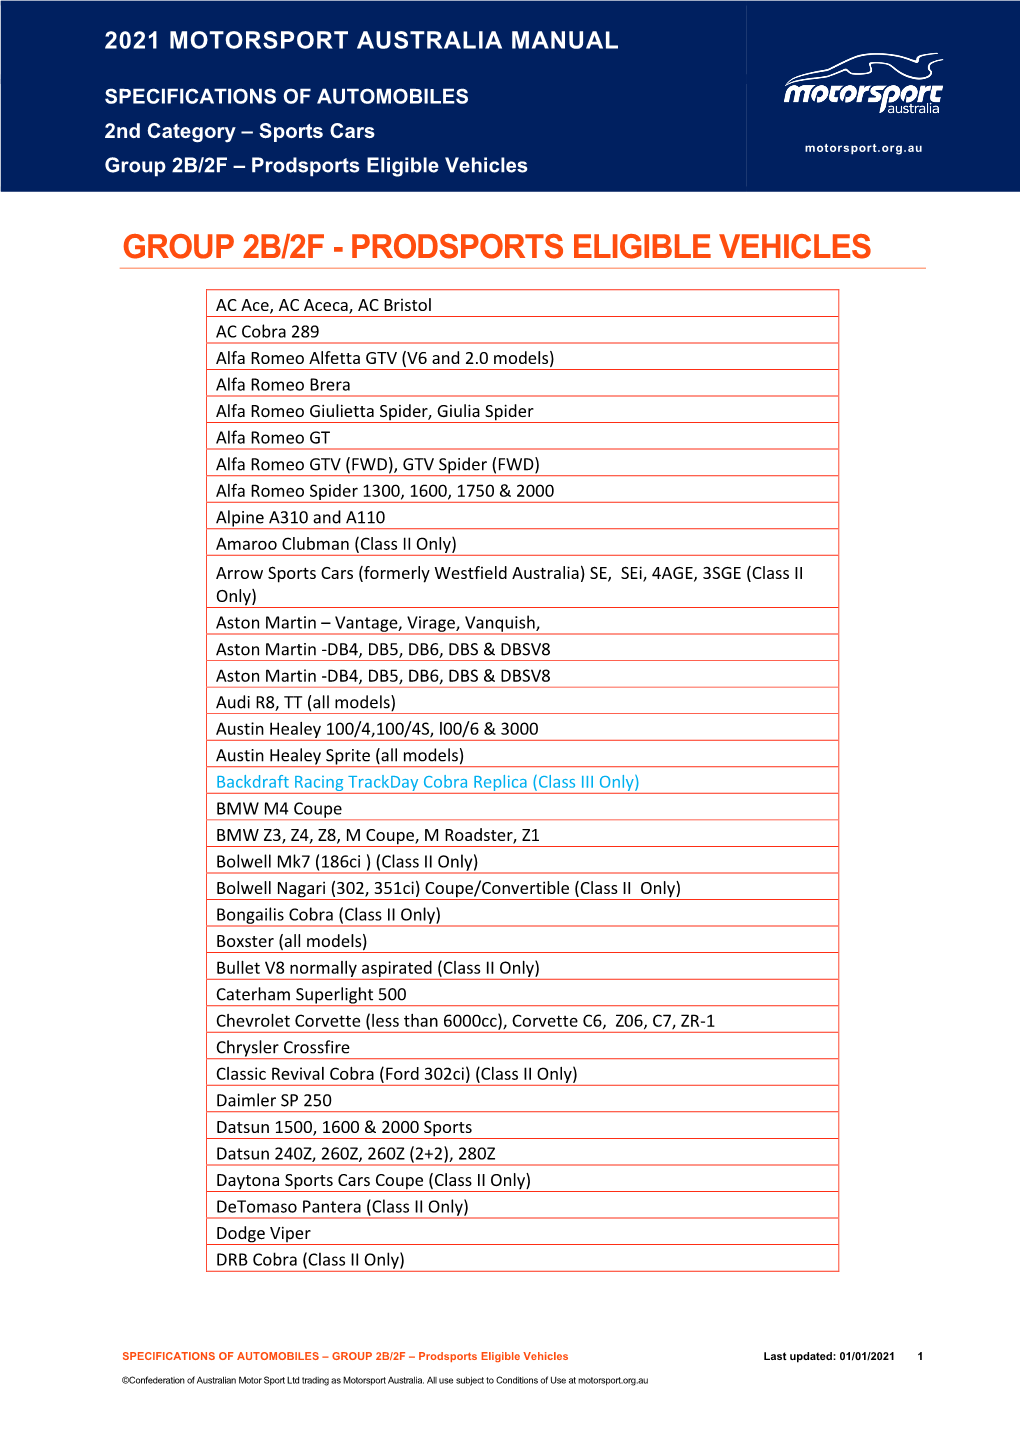 Group 2B/2F – Prodsports Eligible Vehicles